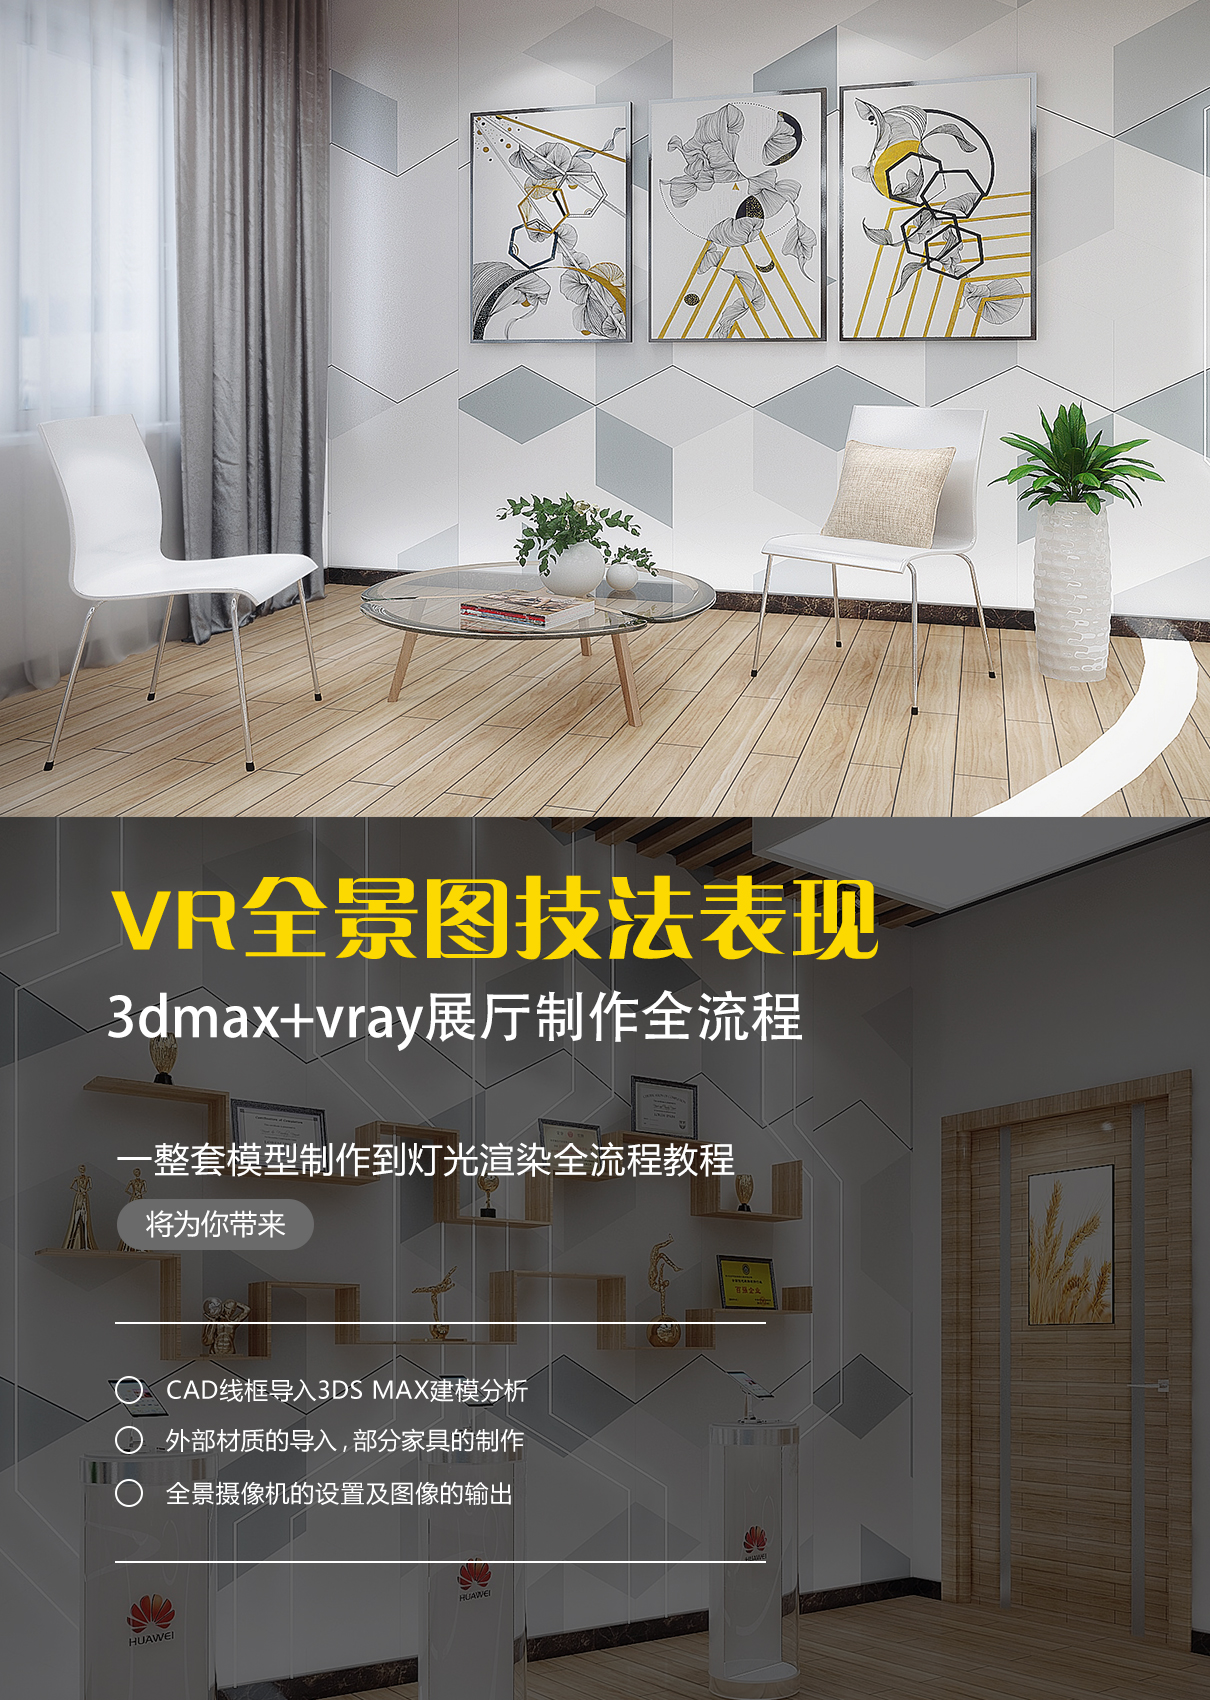 VR全景图漫游/三维效果图 - 三维效果图 - 四川魔杰科技有限公司